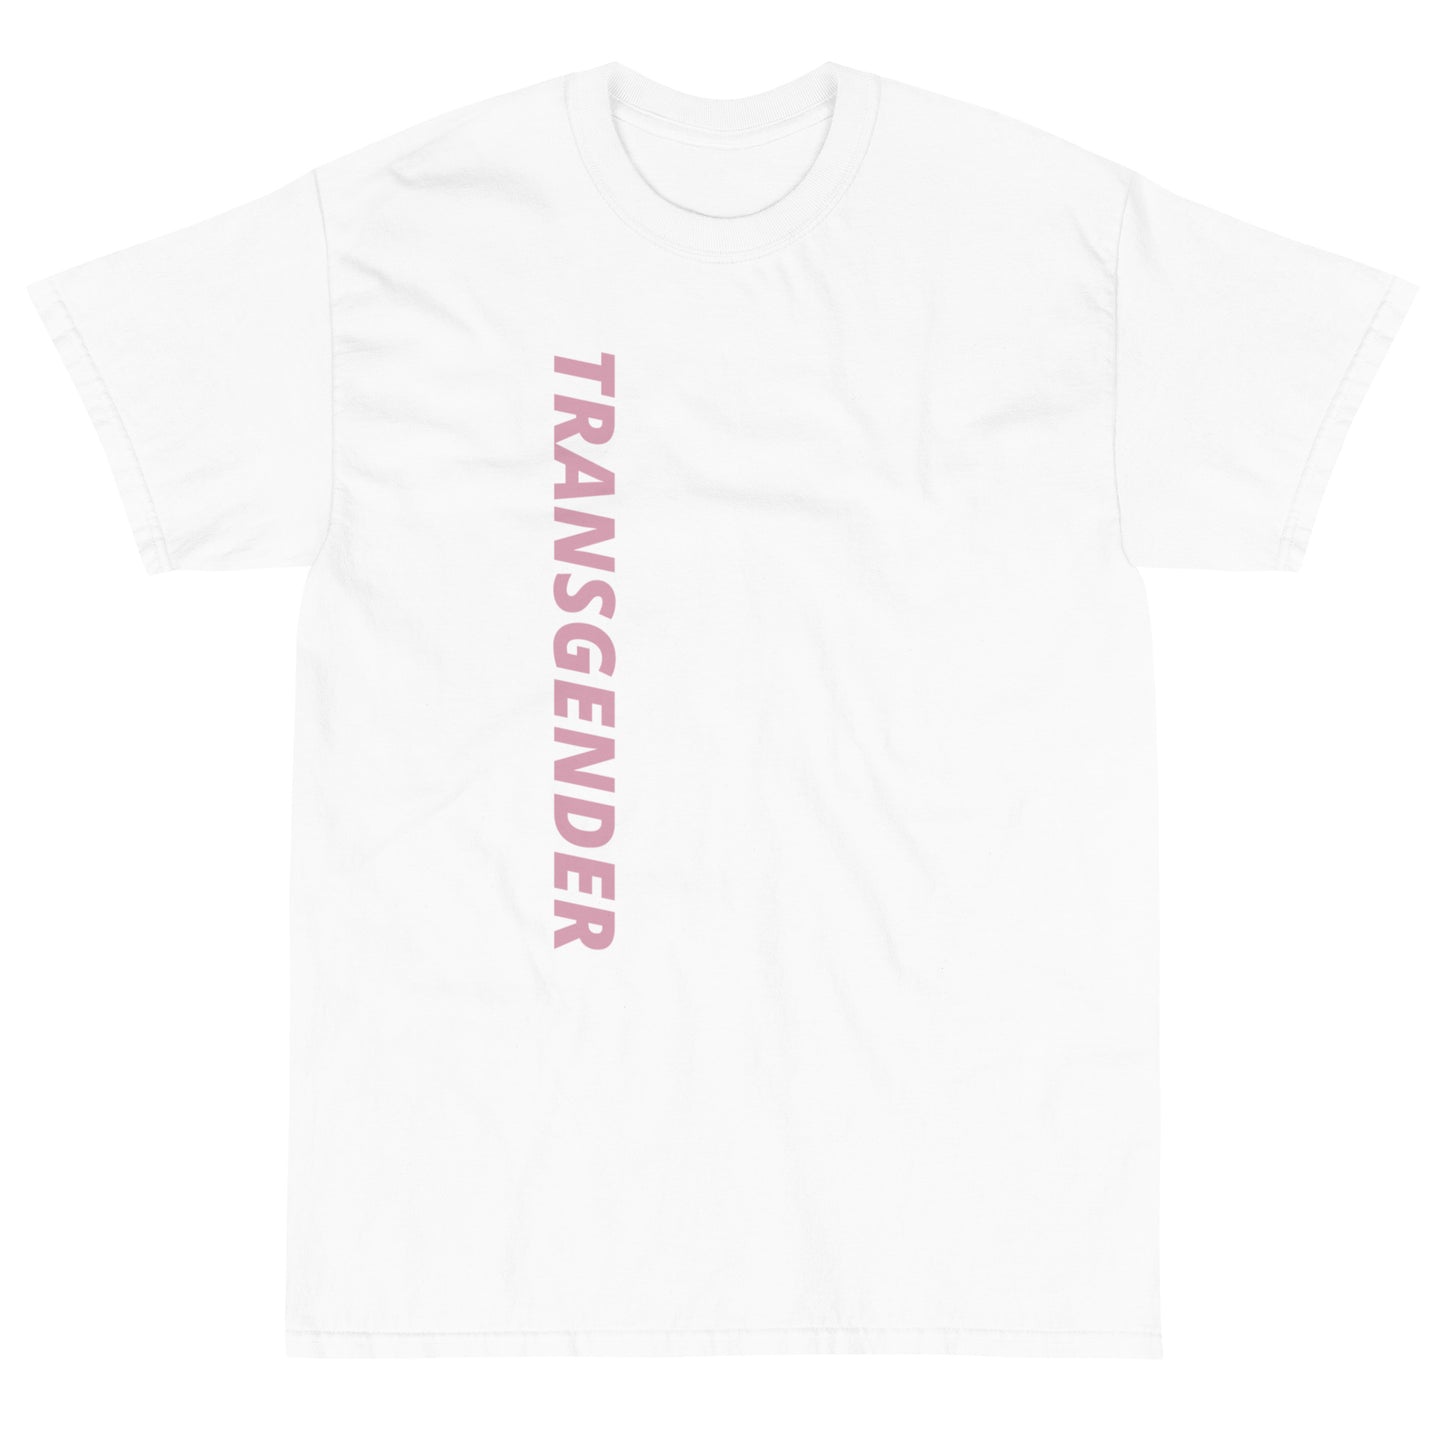 "Transgender" Short Sleeve T-Shirt